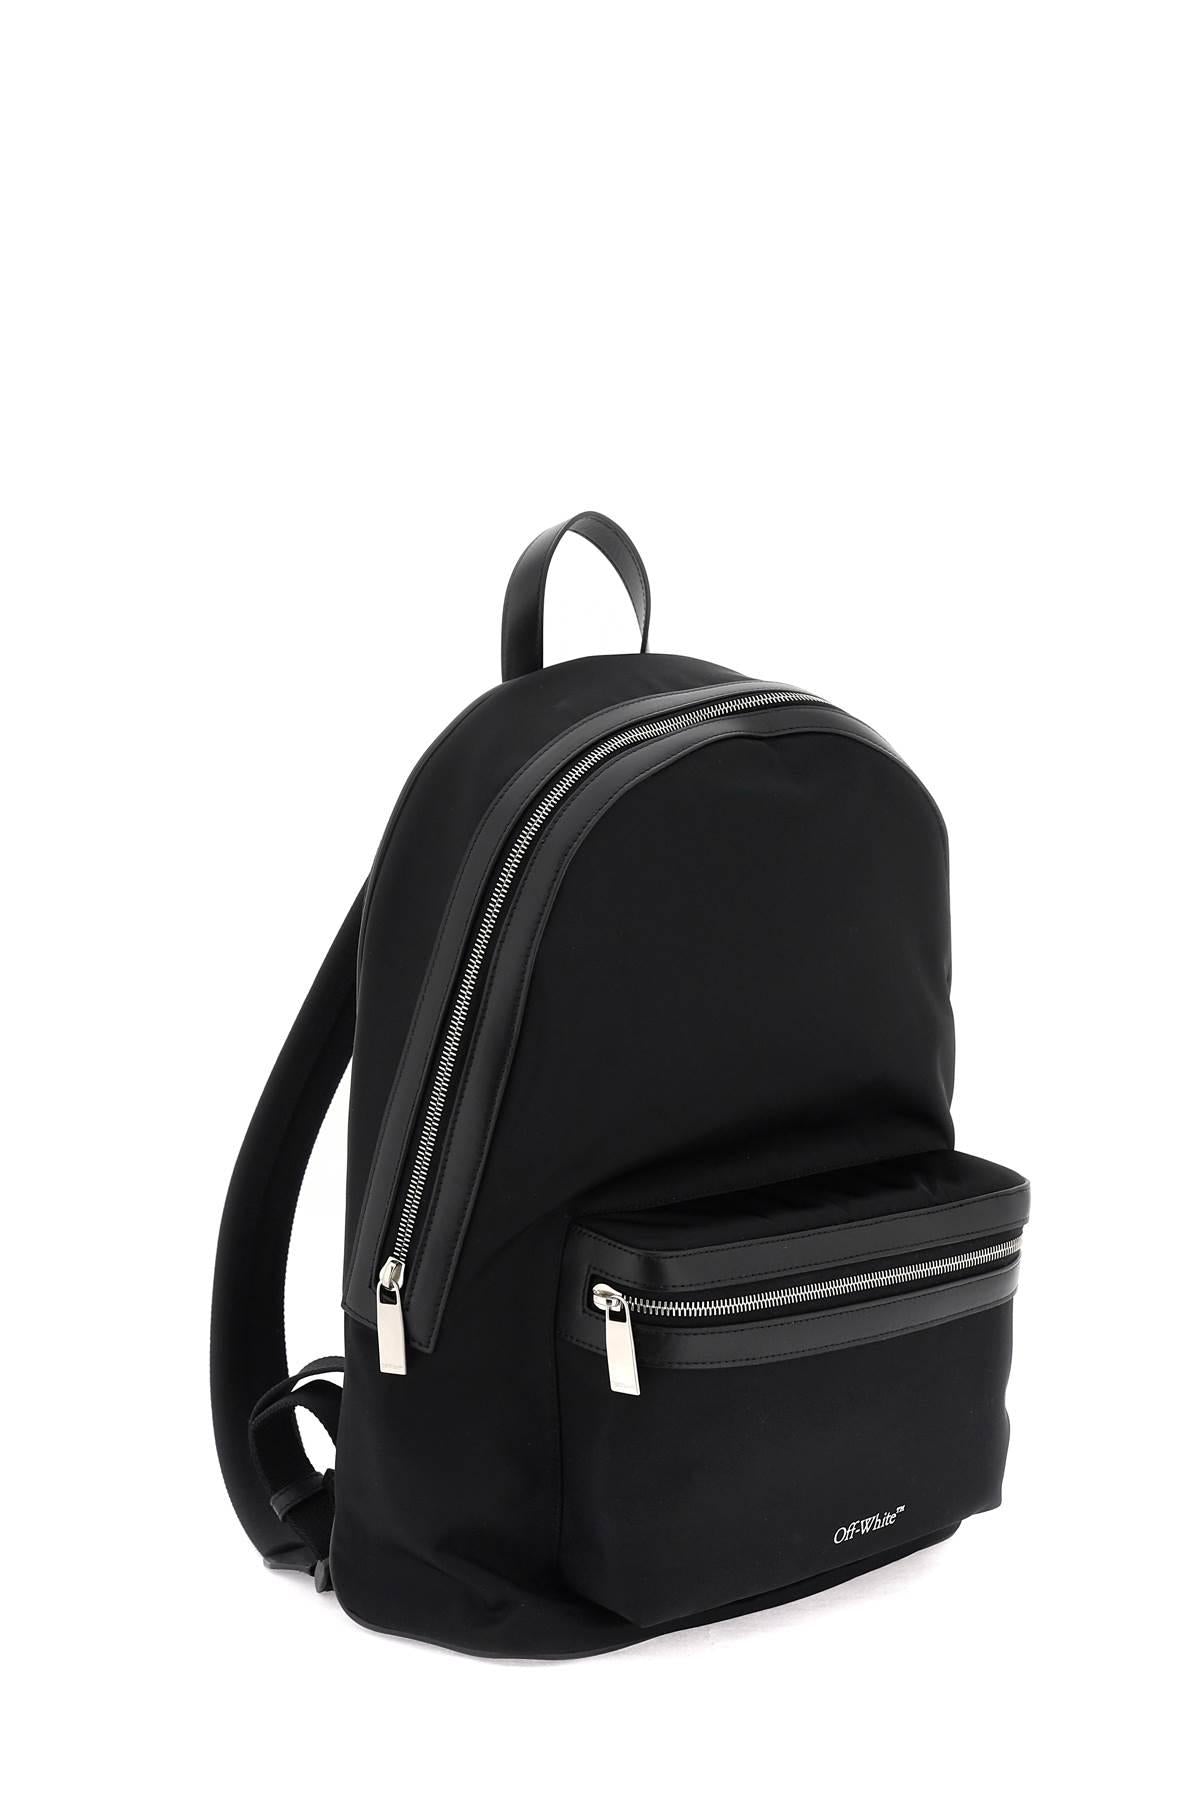 Buy Off-White Logo Nylon Backpack 'Black/White